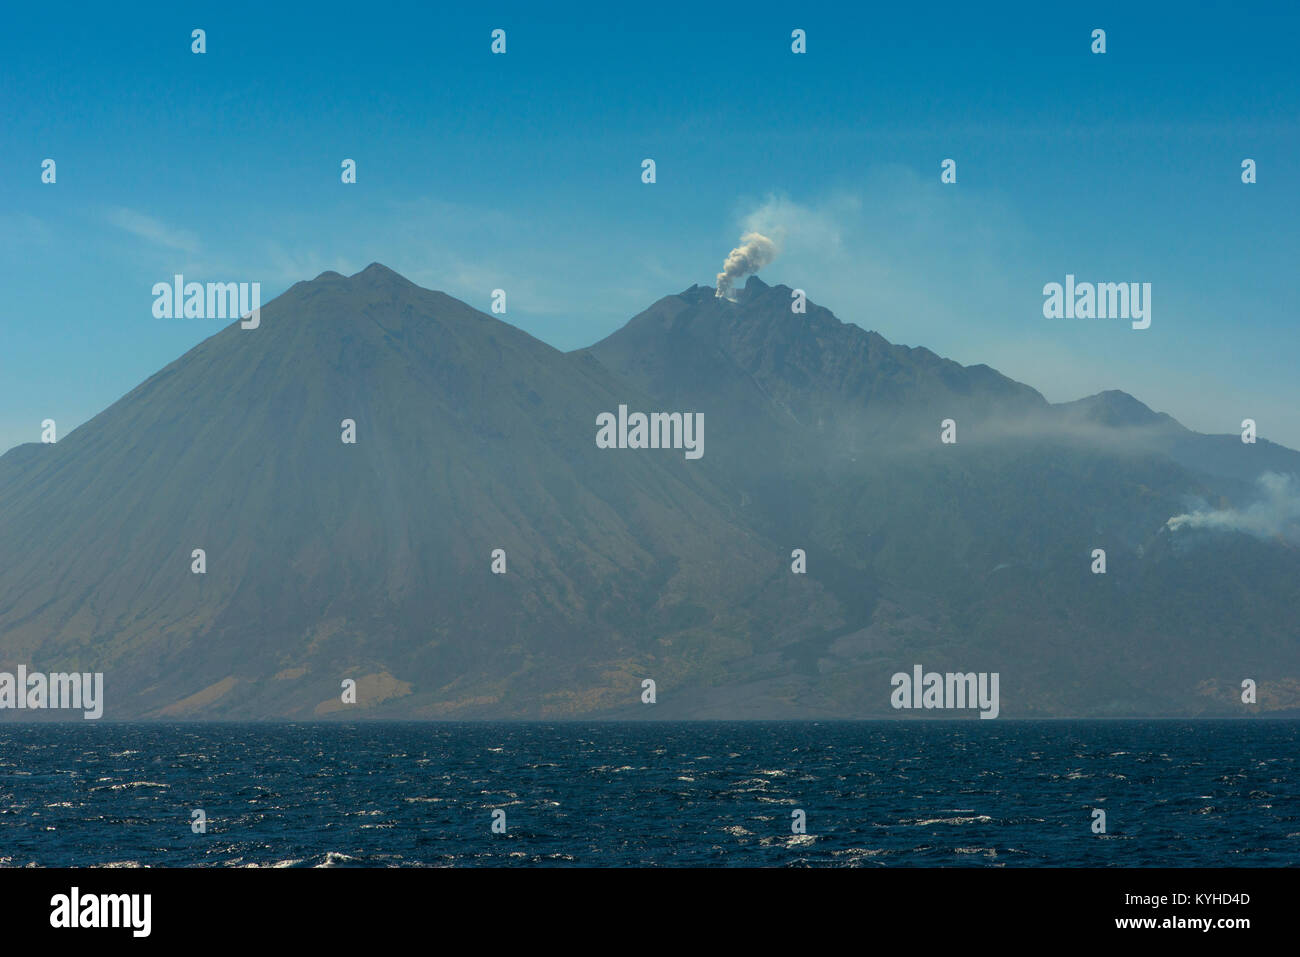 Una vista del volcán de picos y una pequeña erupción del volcán activo Sangeang Gunung Api (API) del noreste de Sumbawa, Indonesia. Foto de stock